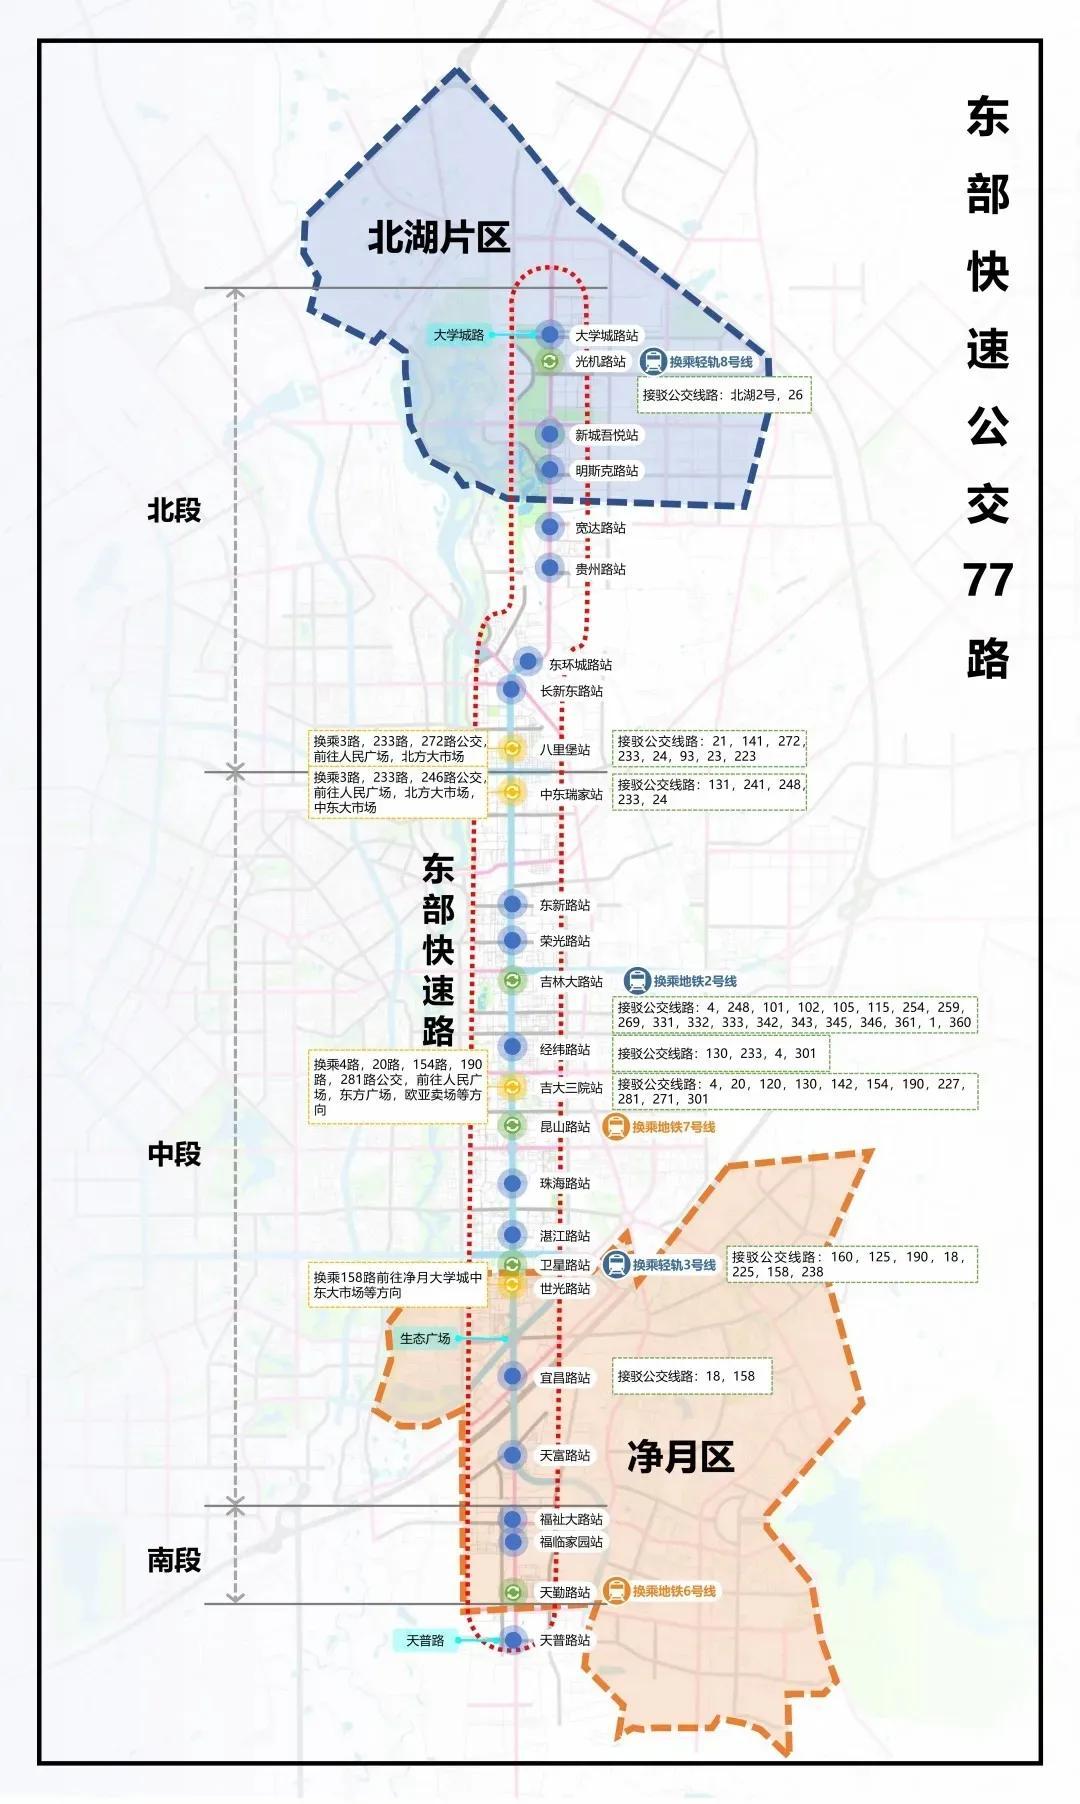 长春计划开通19条南北走向公交干线 公交路线图及站点设置汇总- 长春本地宝